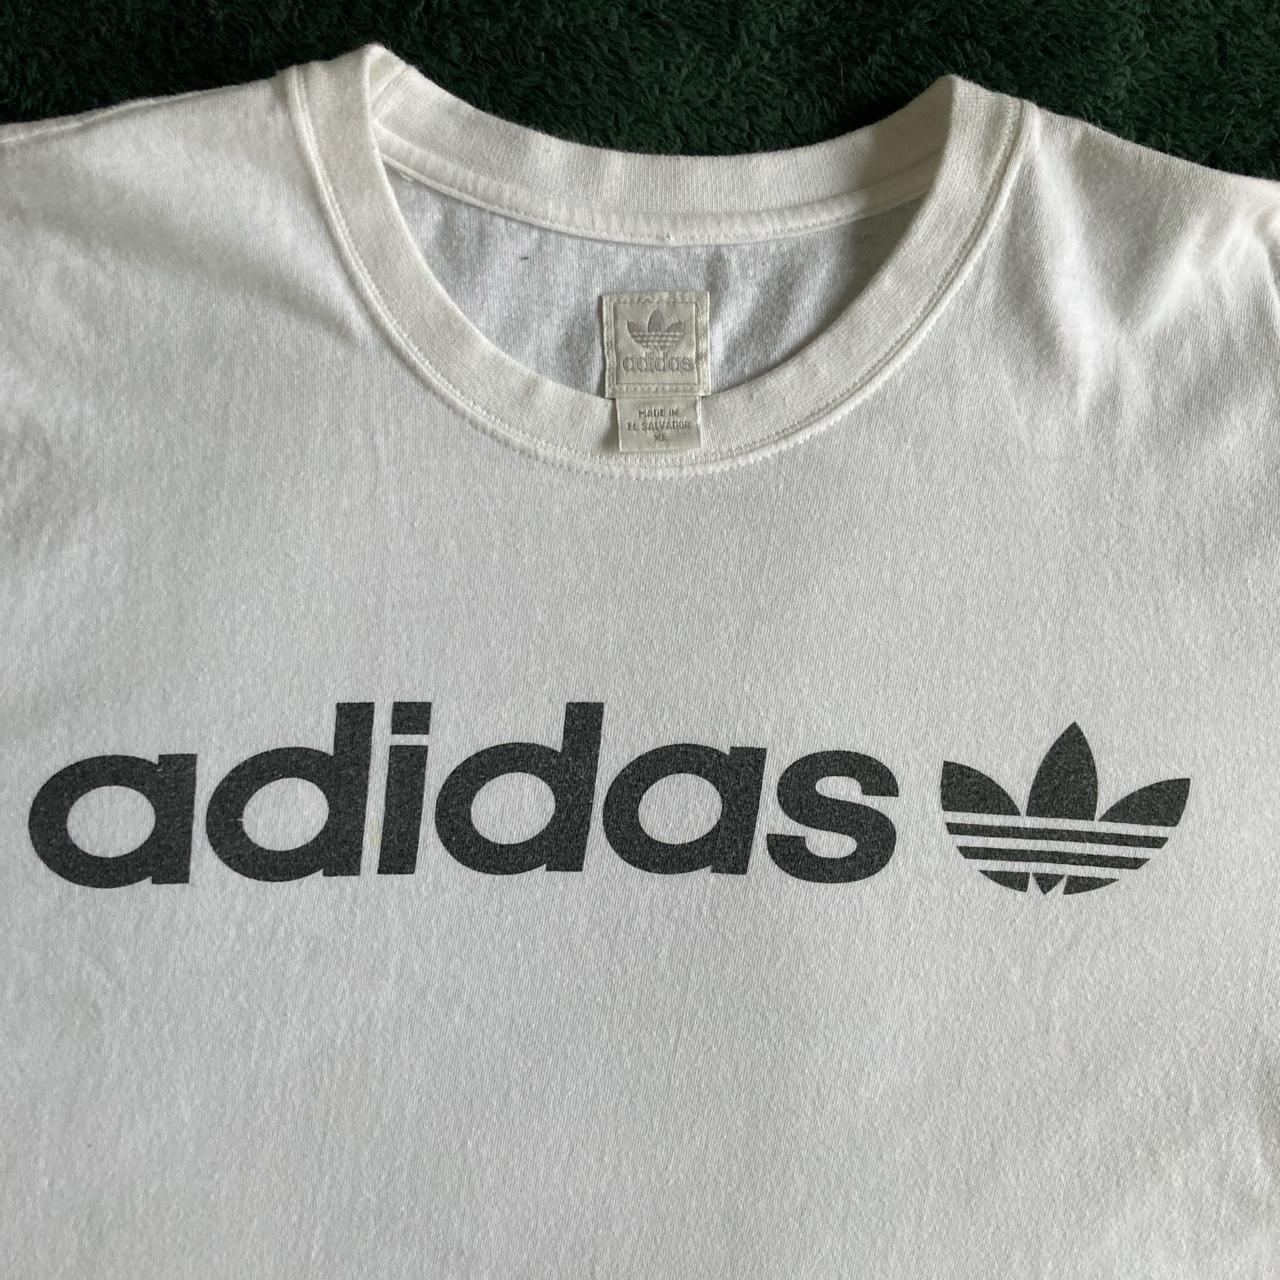 Vintage 90s Adidas T-shirt with older tag design.... - Depop